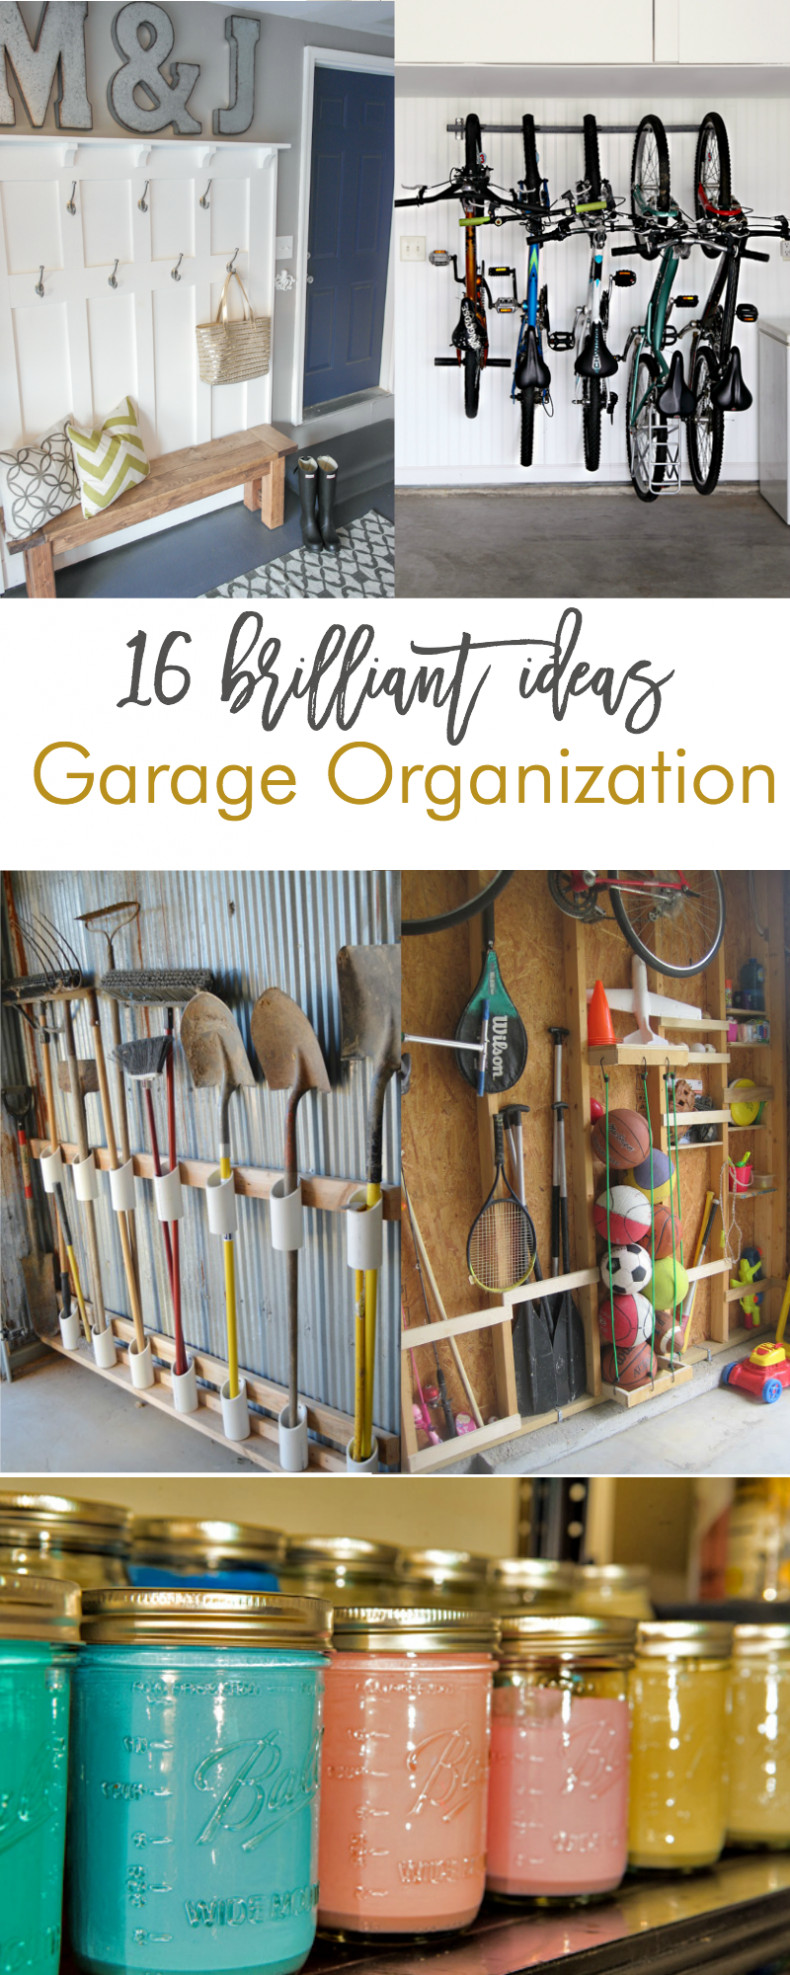 DIY Garage Organization Ideas
 16 Brilliant DIY Garage Organization Ideas